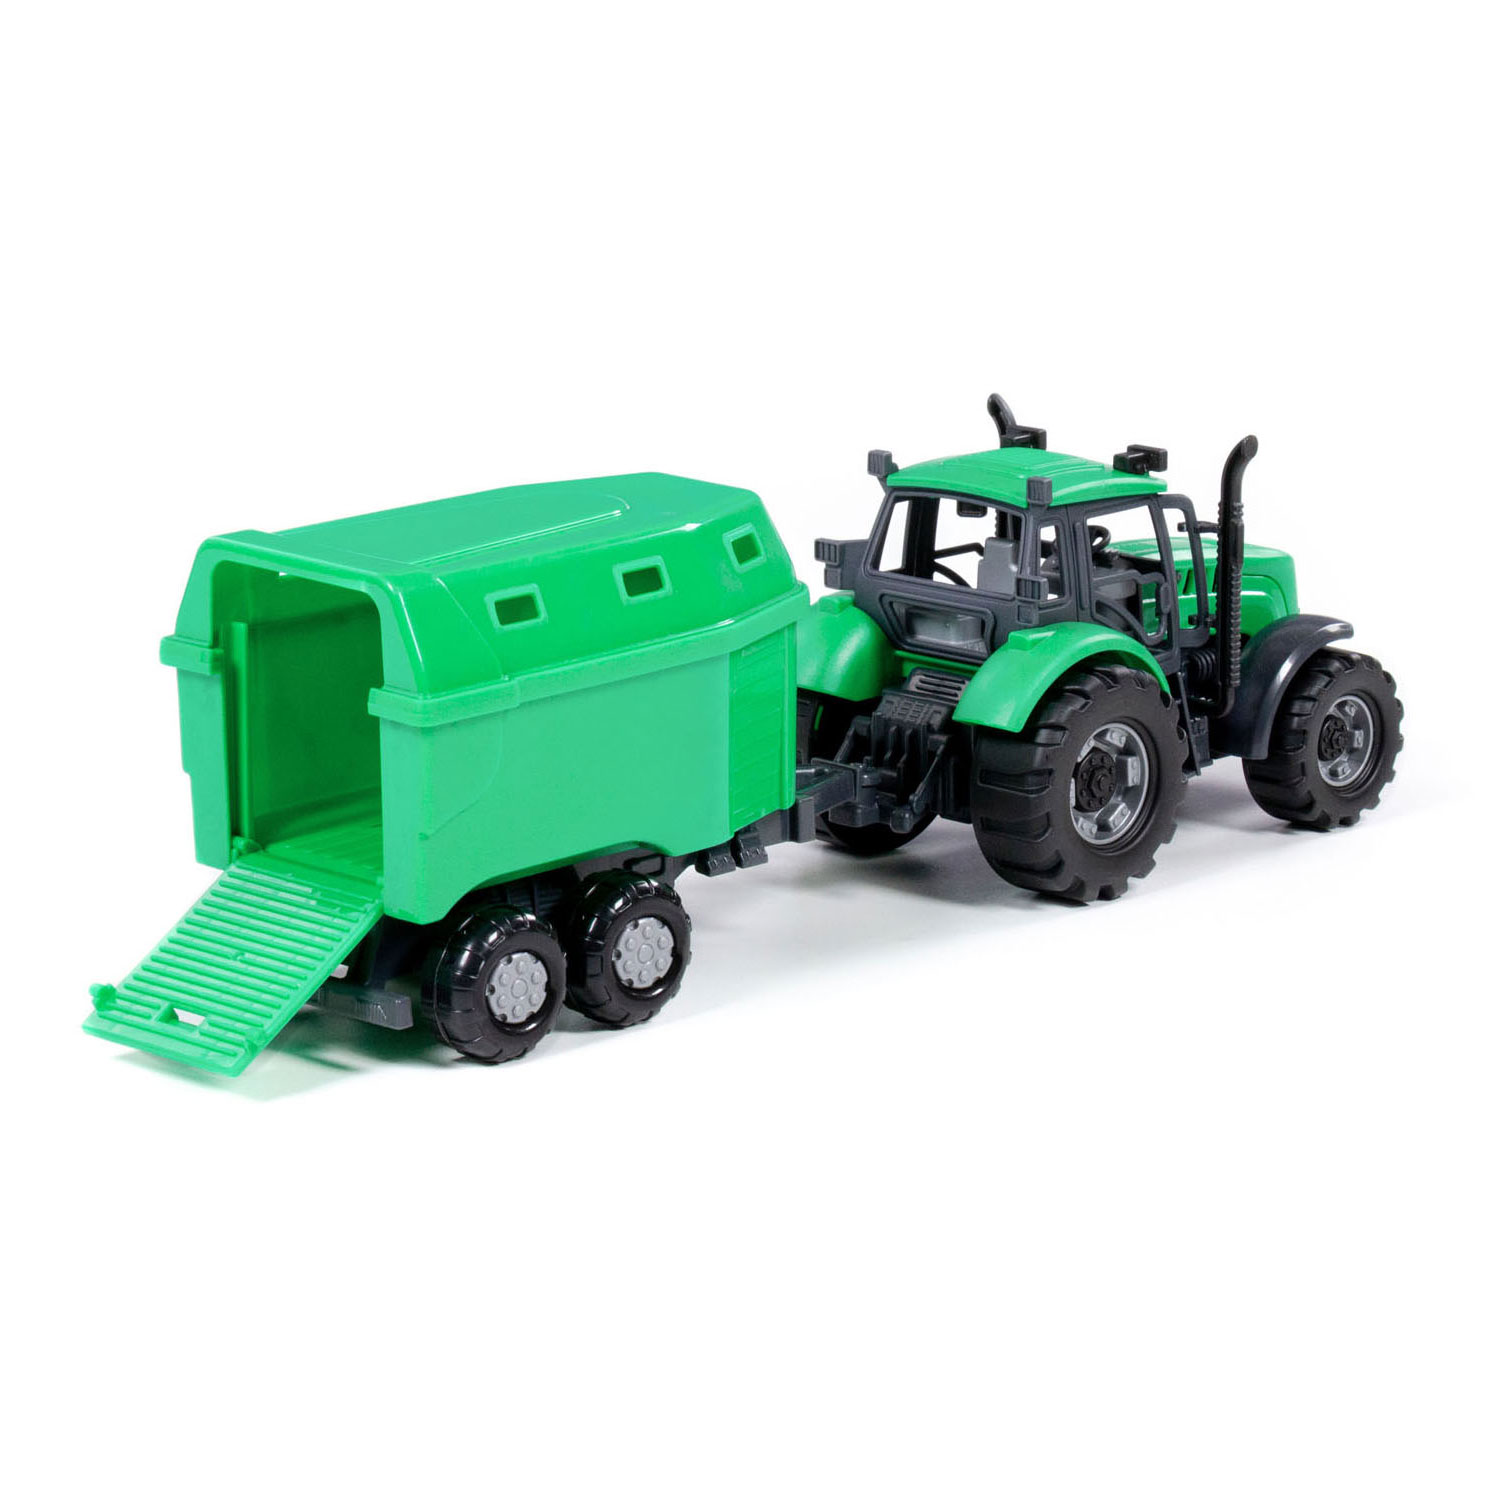 Tracteur Cavallino avec remorque à chevaux vert, échelle 1:32